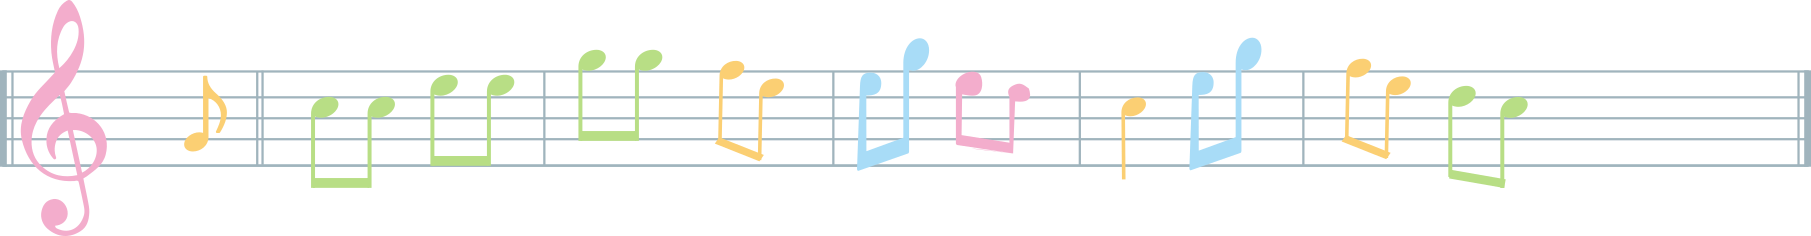 Imagem de uma partitura com notas coloridas